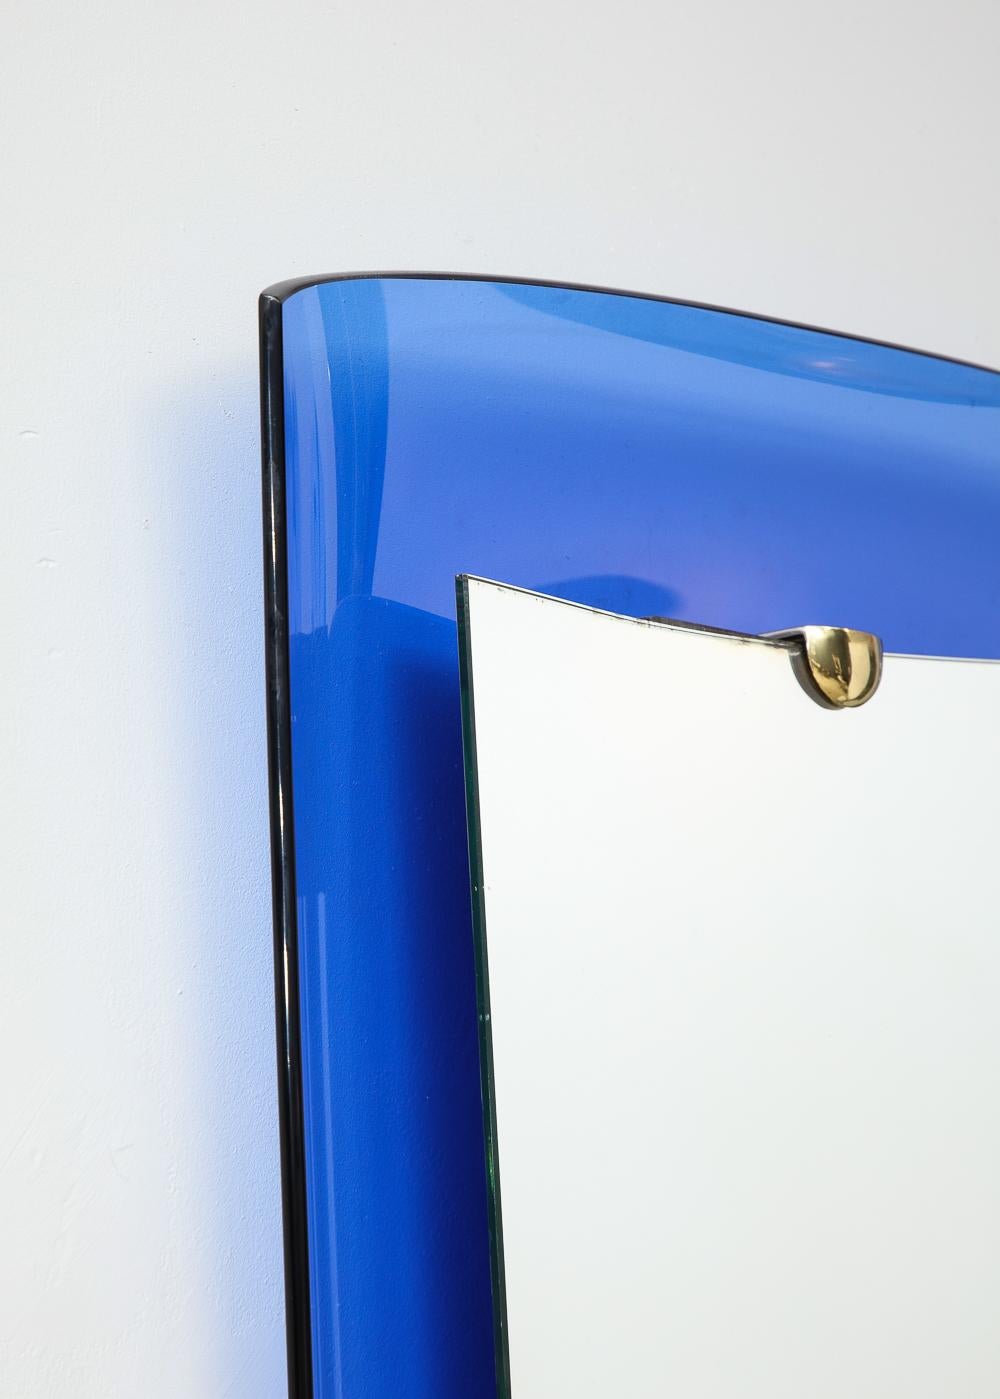 Glas, Spiegel, Messing. Das Modell #2712 von Cristal Art hat einen konkaven blauen Glasrahmen mit einem erhabenen verspiegelten Zentrum, das von Messingbeschlägen gehalten wird.